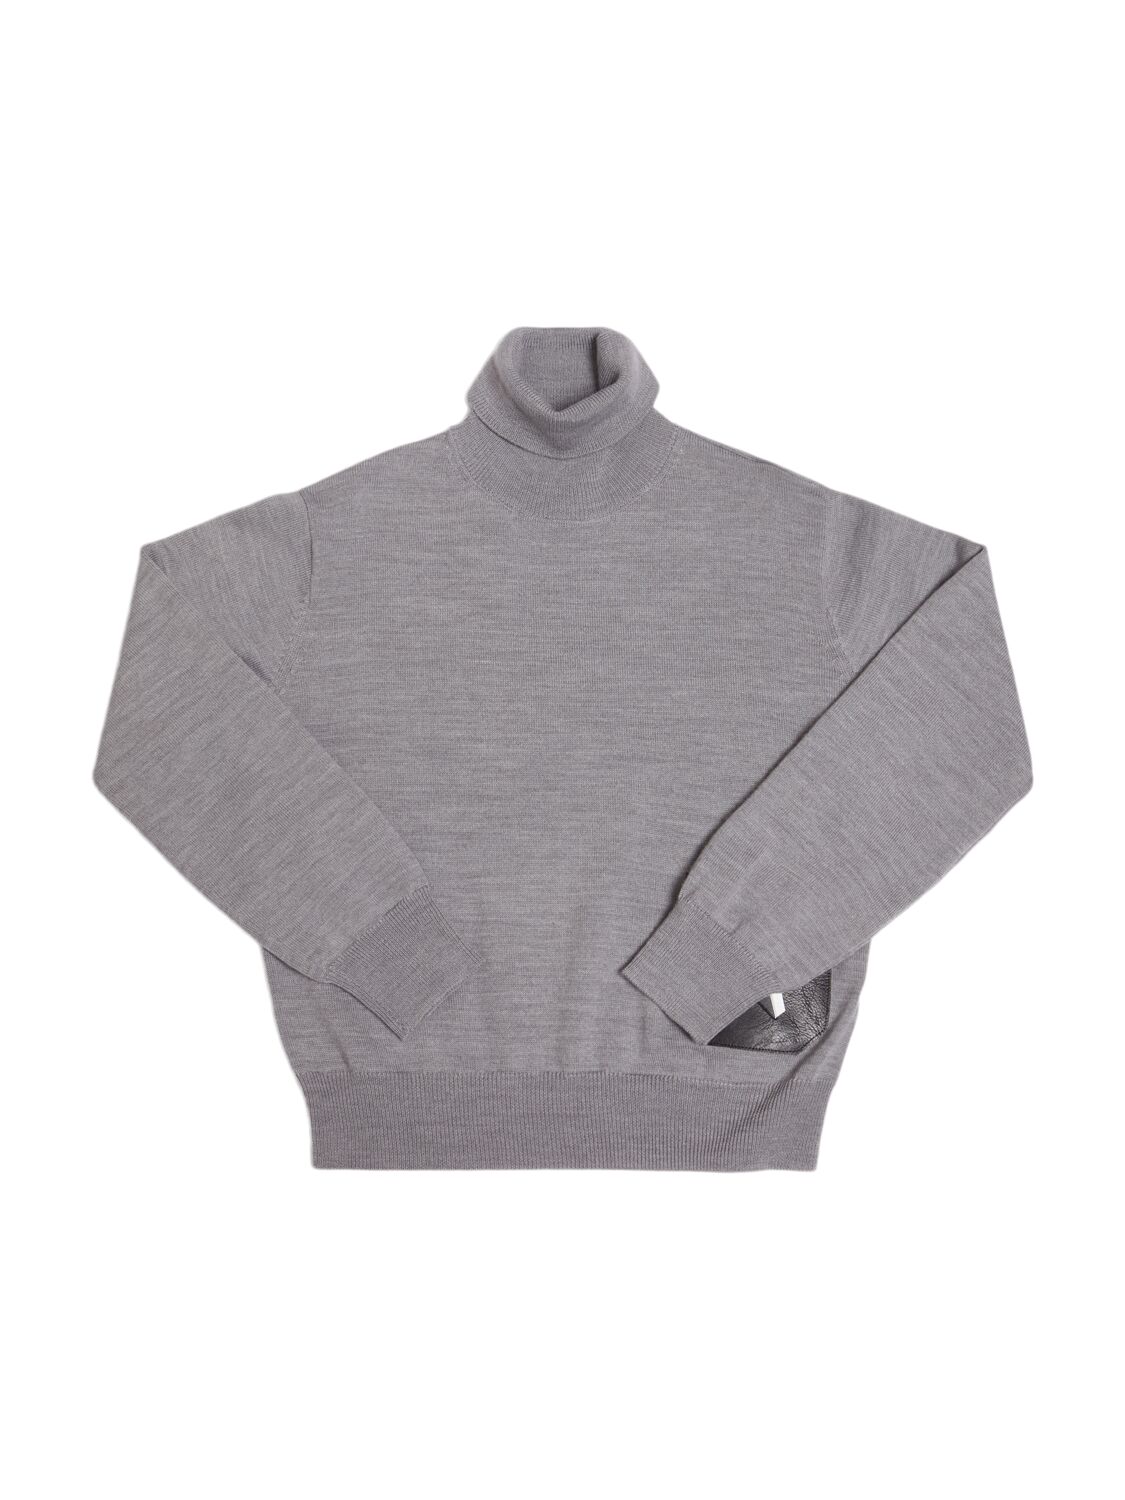 N°21 Kids' Wool Blend Knit Turtleneck Sweater In Grey